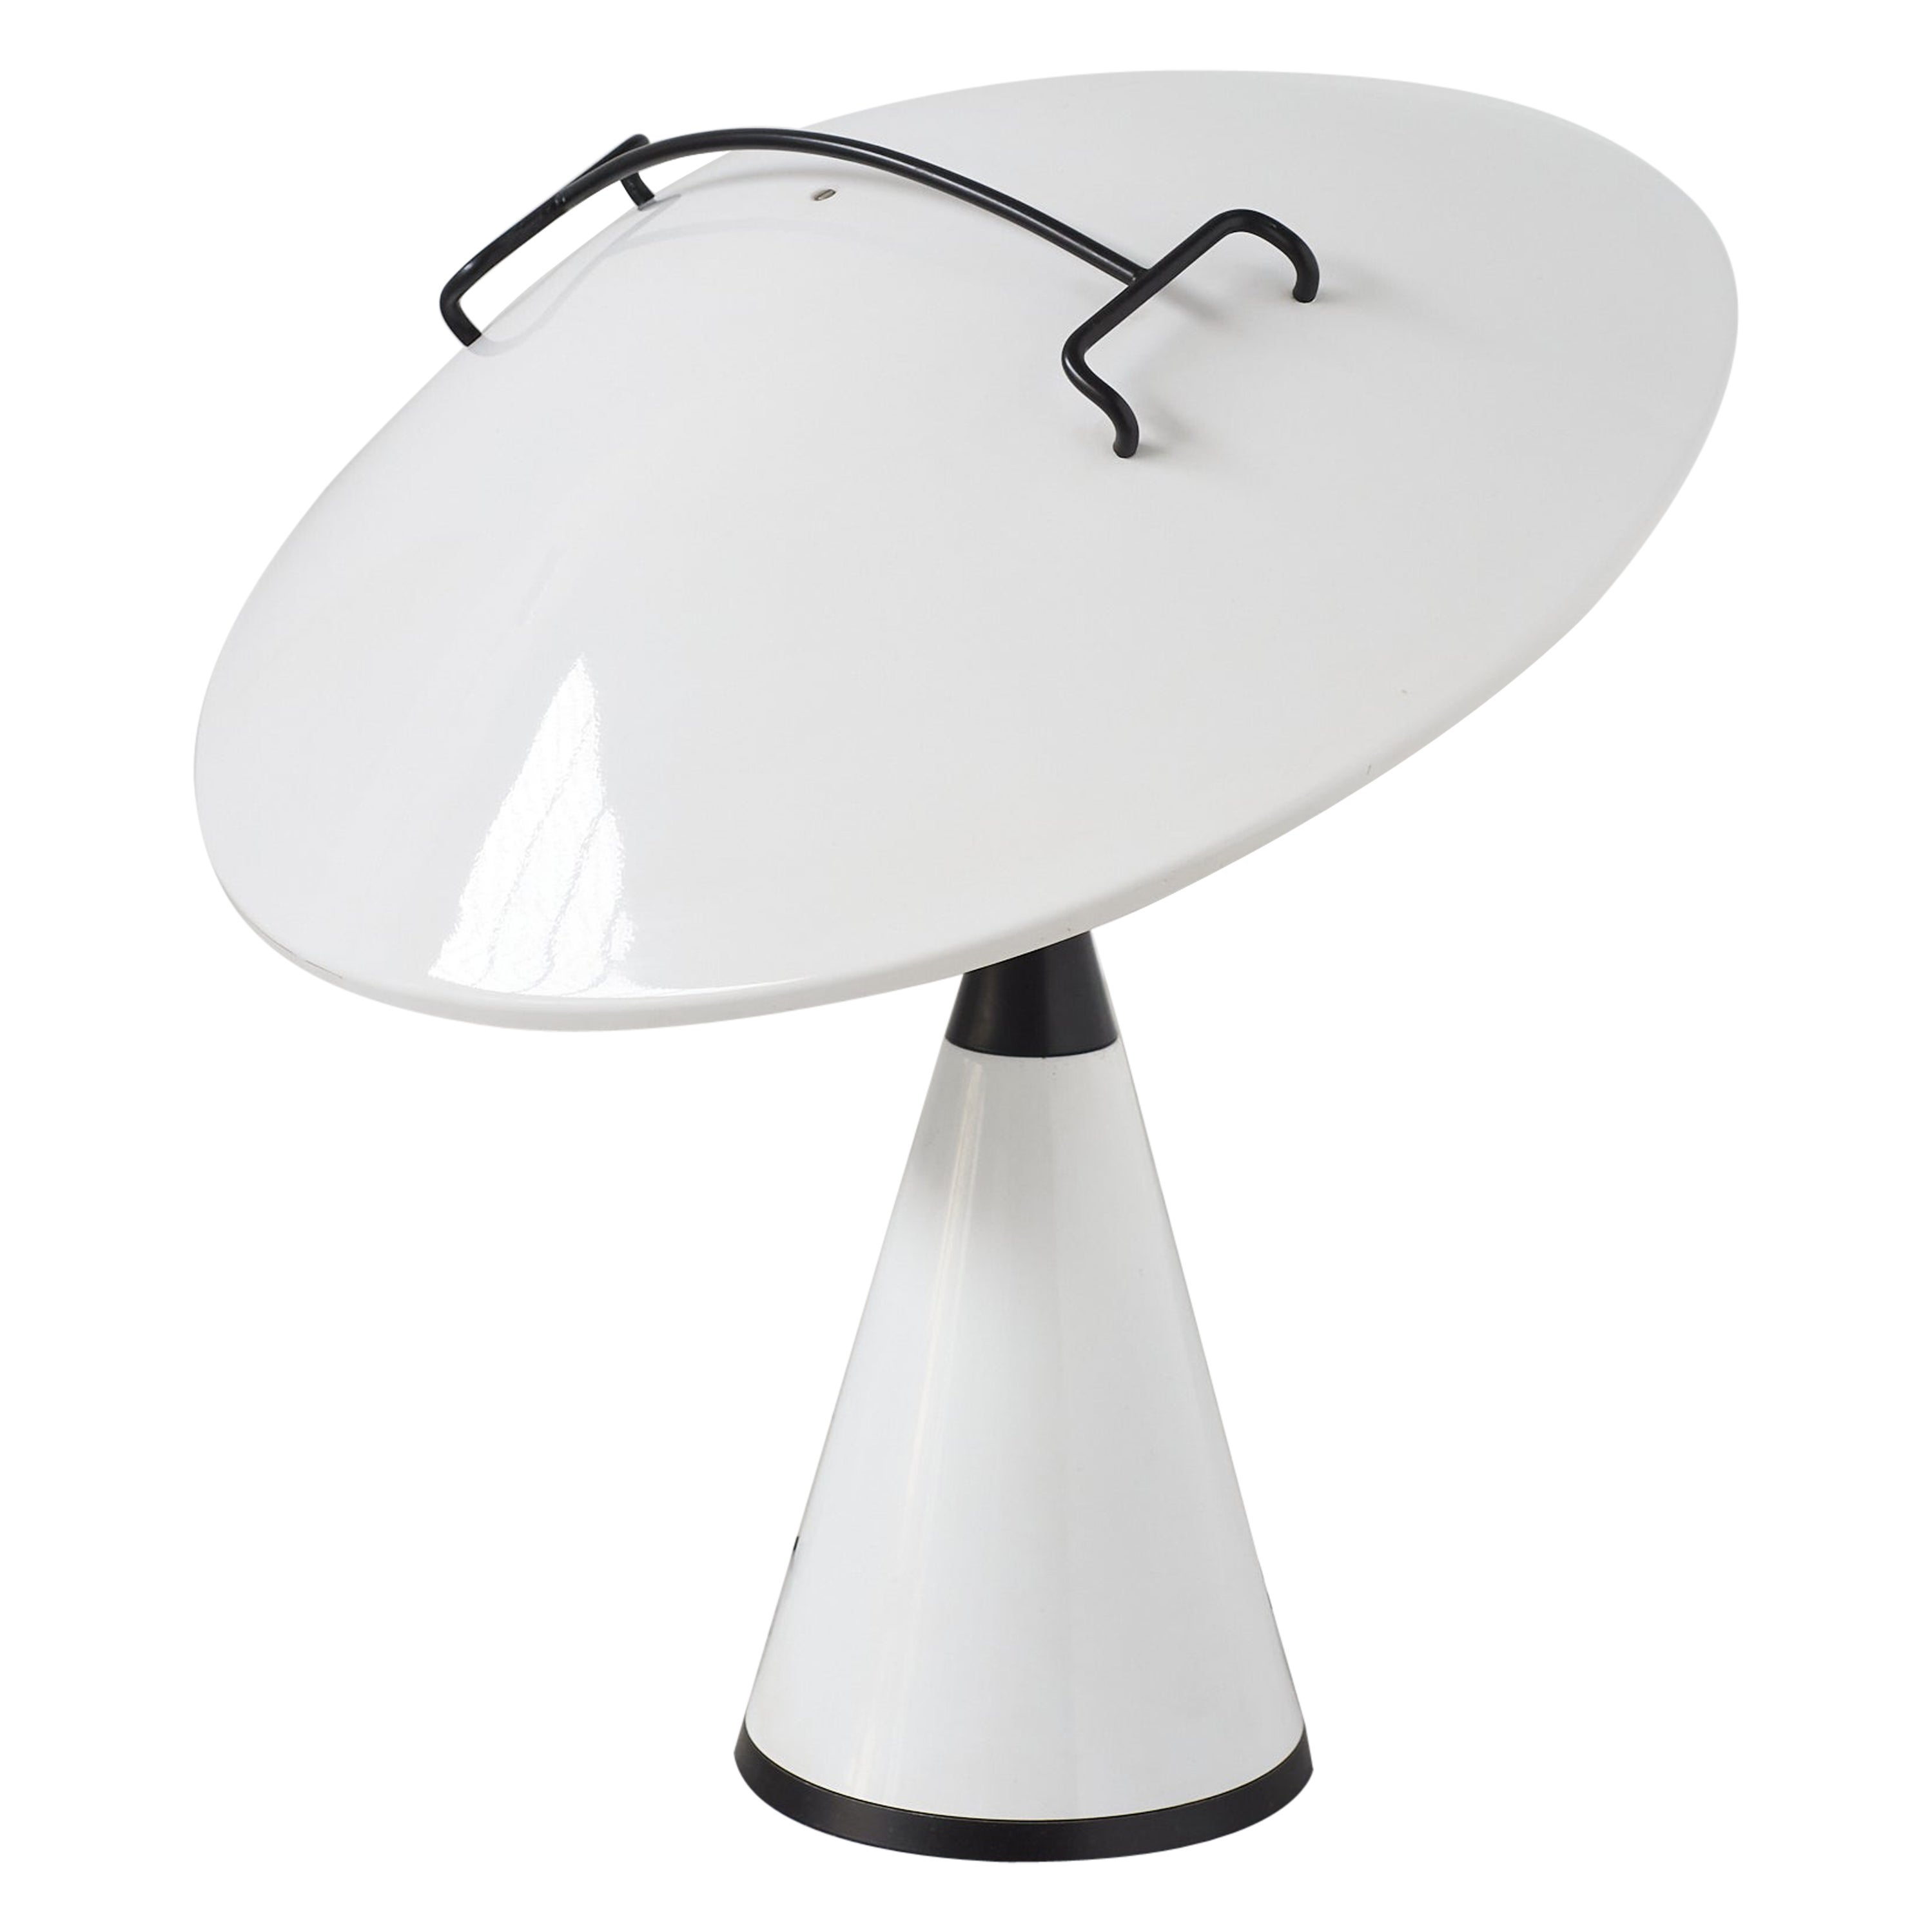 676 Radar-Tisch-/Schirmleuchte von Elio Martinelli für Martinelli Luce, Italien, 1970er Jahre.